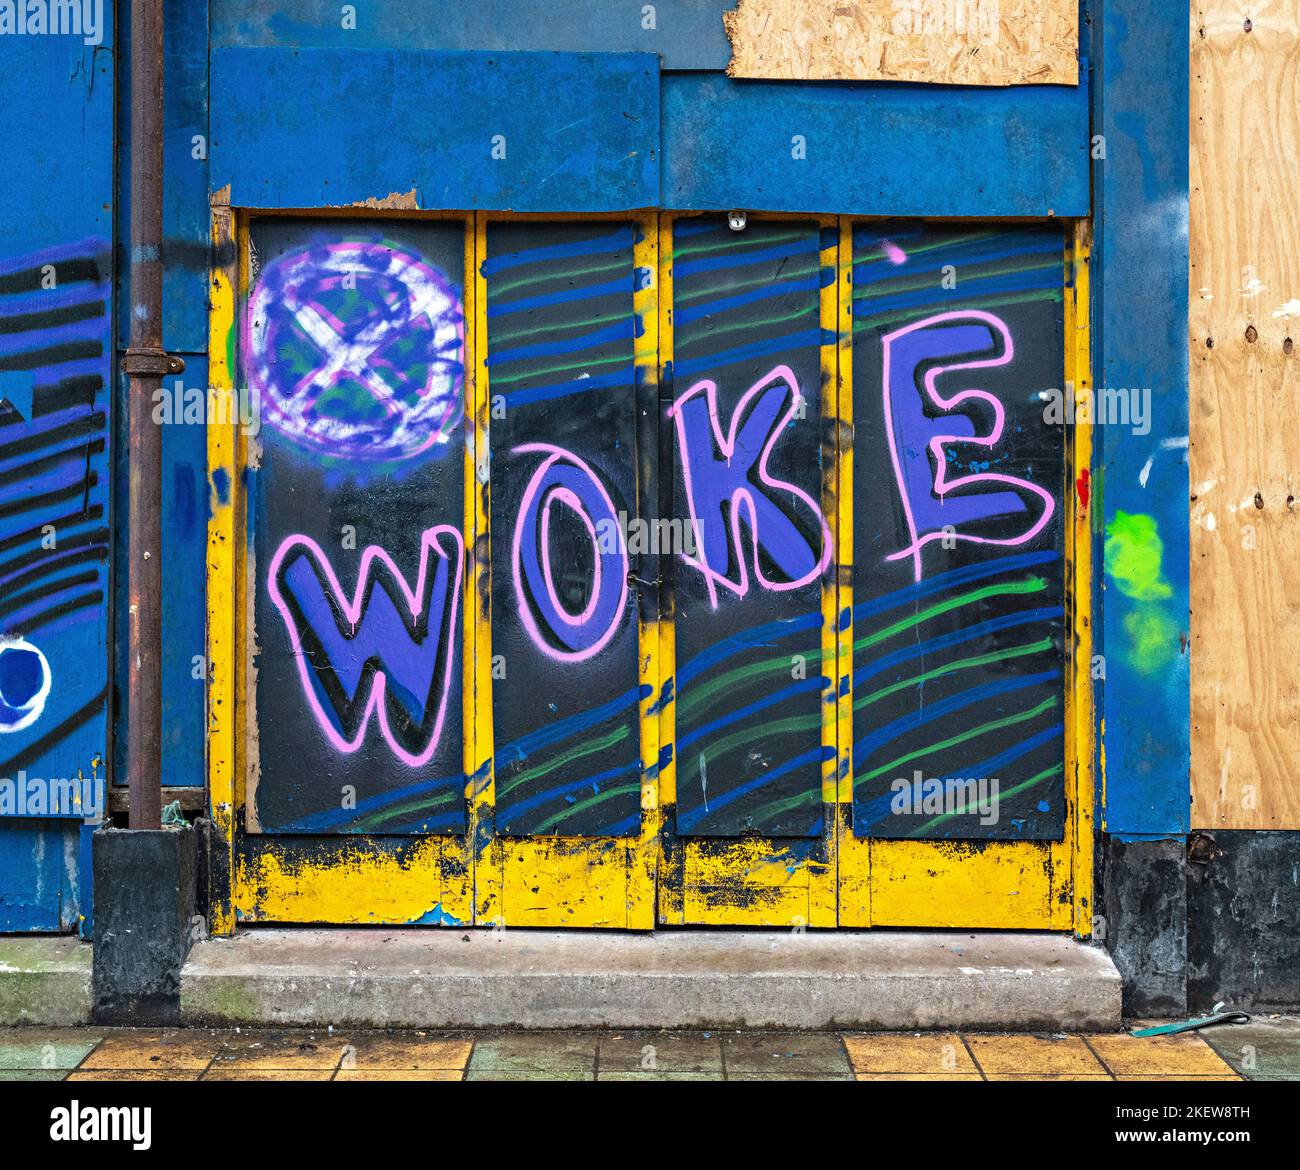 Woke - Graffiti Stock Photo